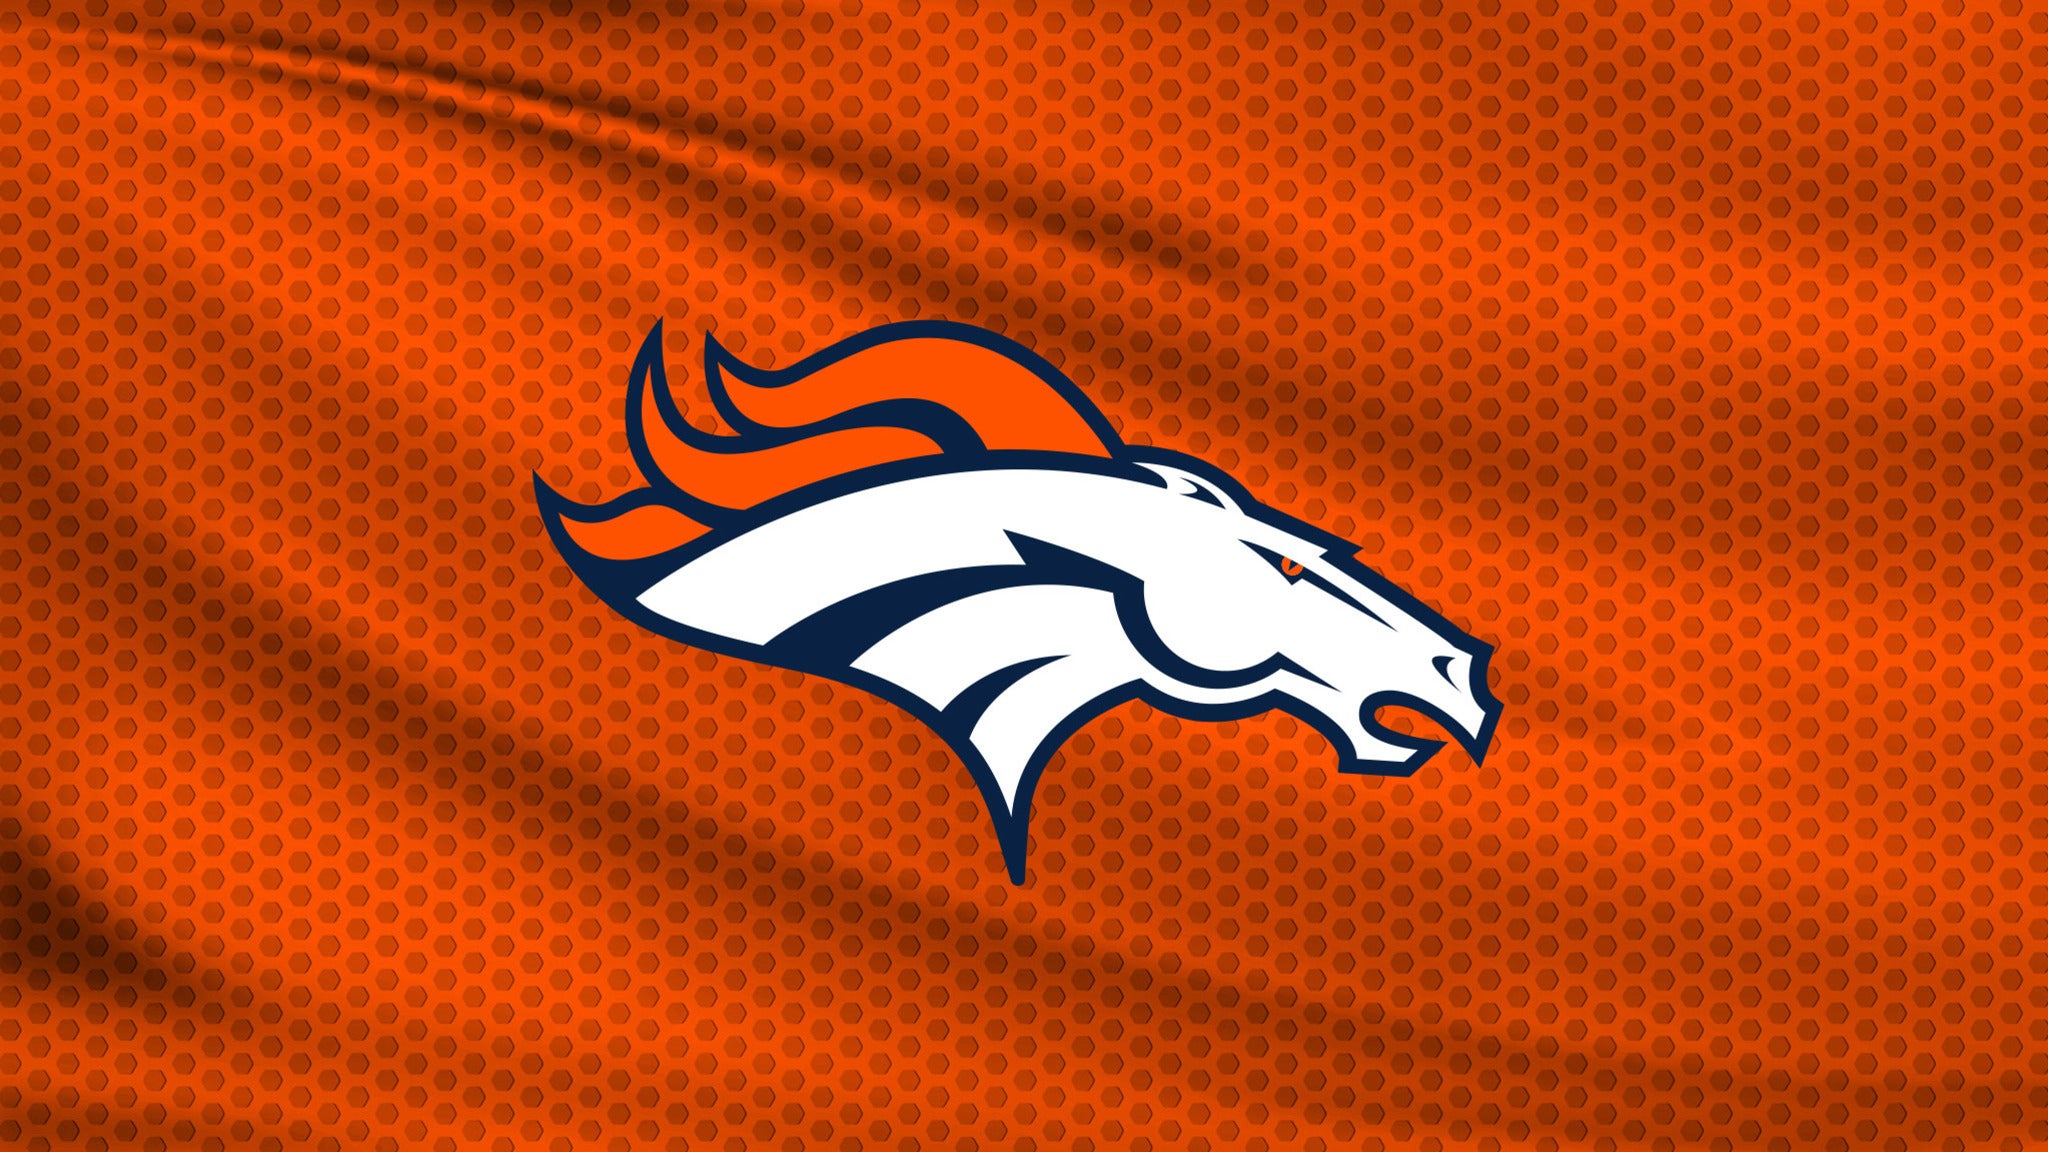 Denver Broncos v Kansas City Chiefs PARKING - Denver, CO 80204